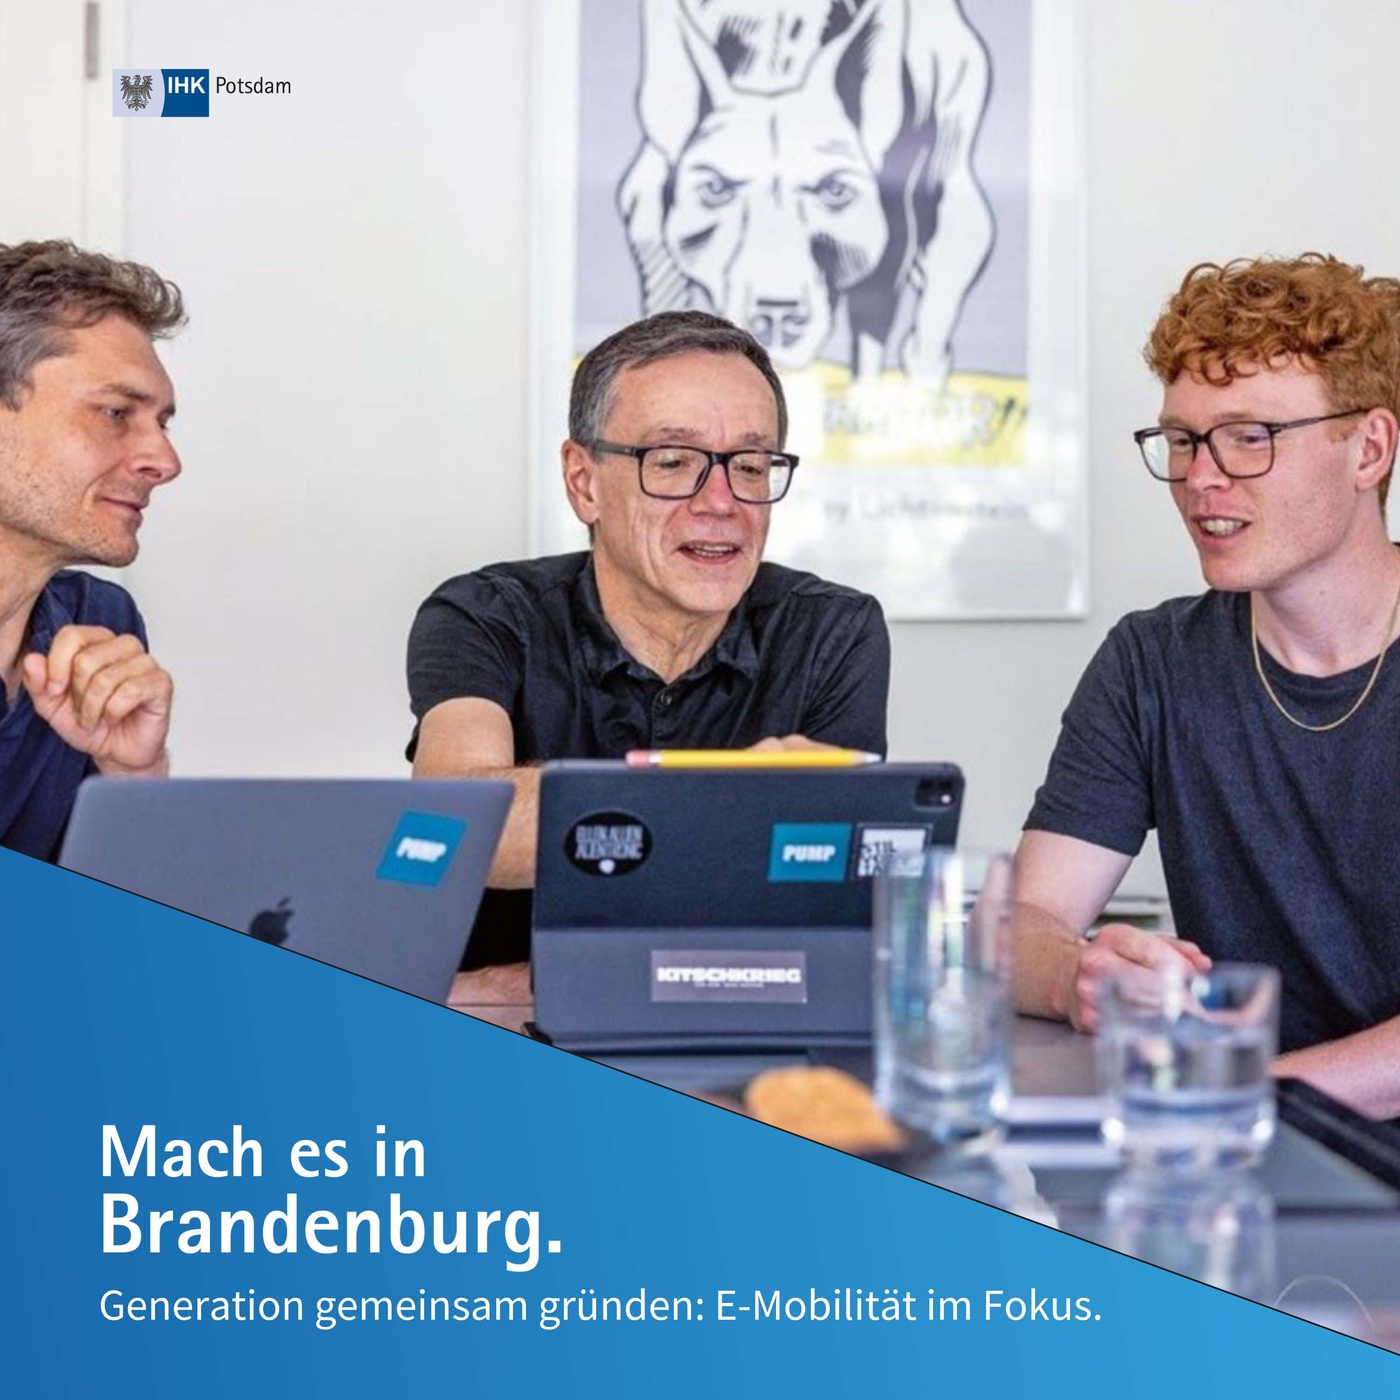 Generation gemeinsam gründen: E-Mobilität im Fokus | Mach es in Brandenburg (16)